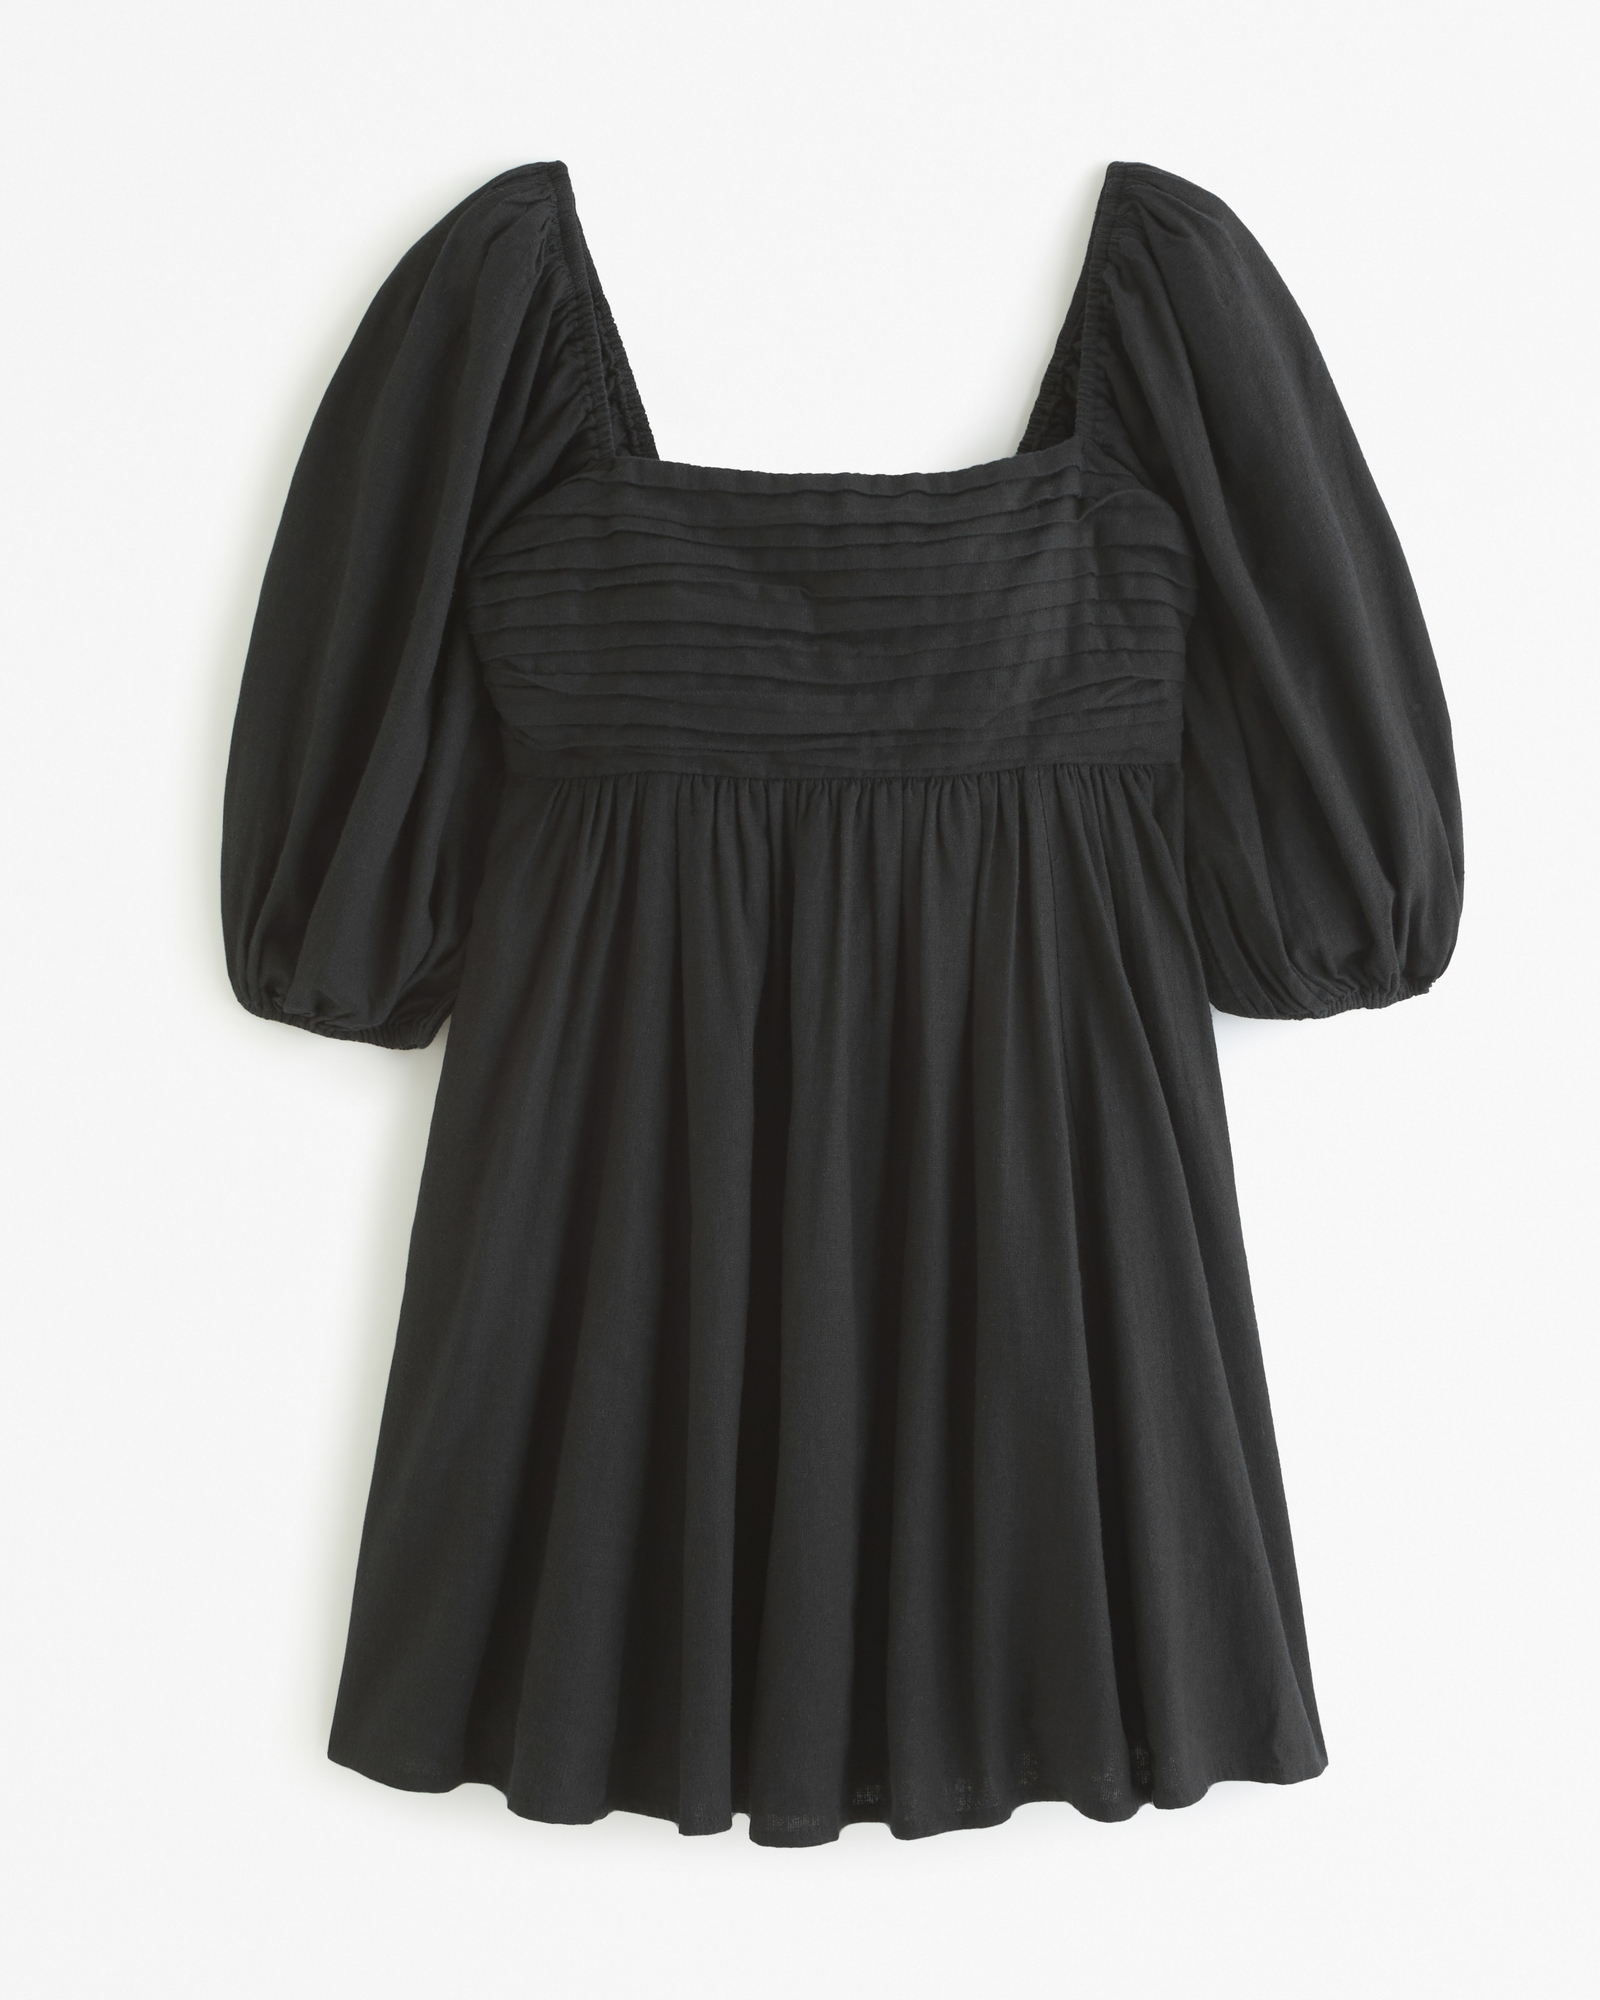 The A&F Emerson Linen-Blend Puff Sleeve Mini Dress